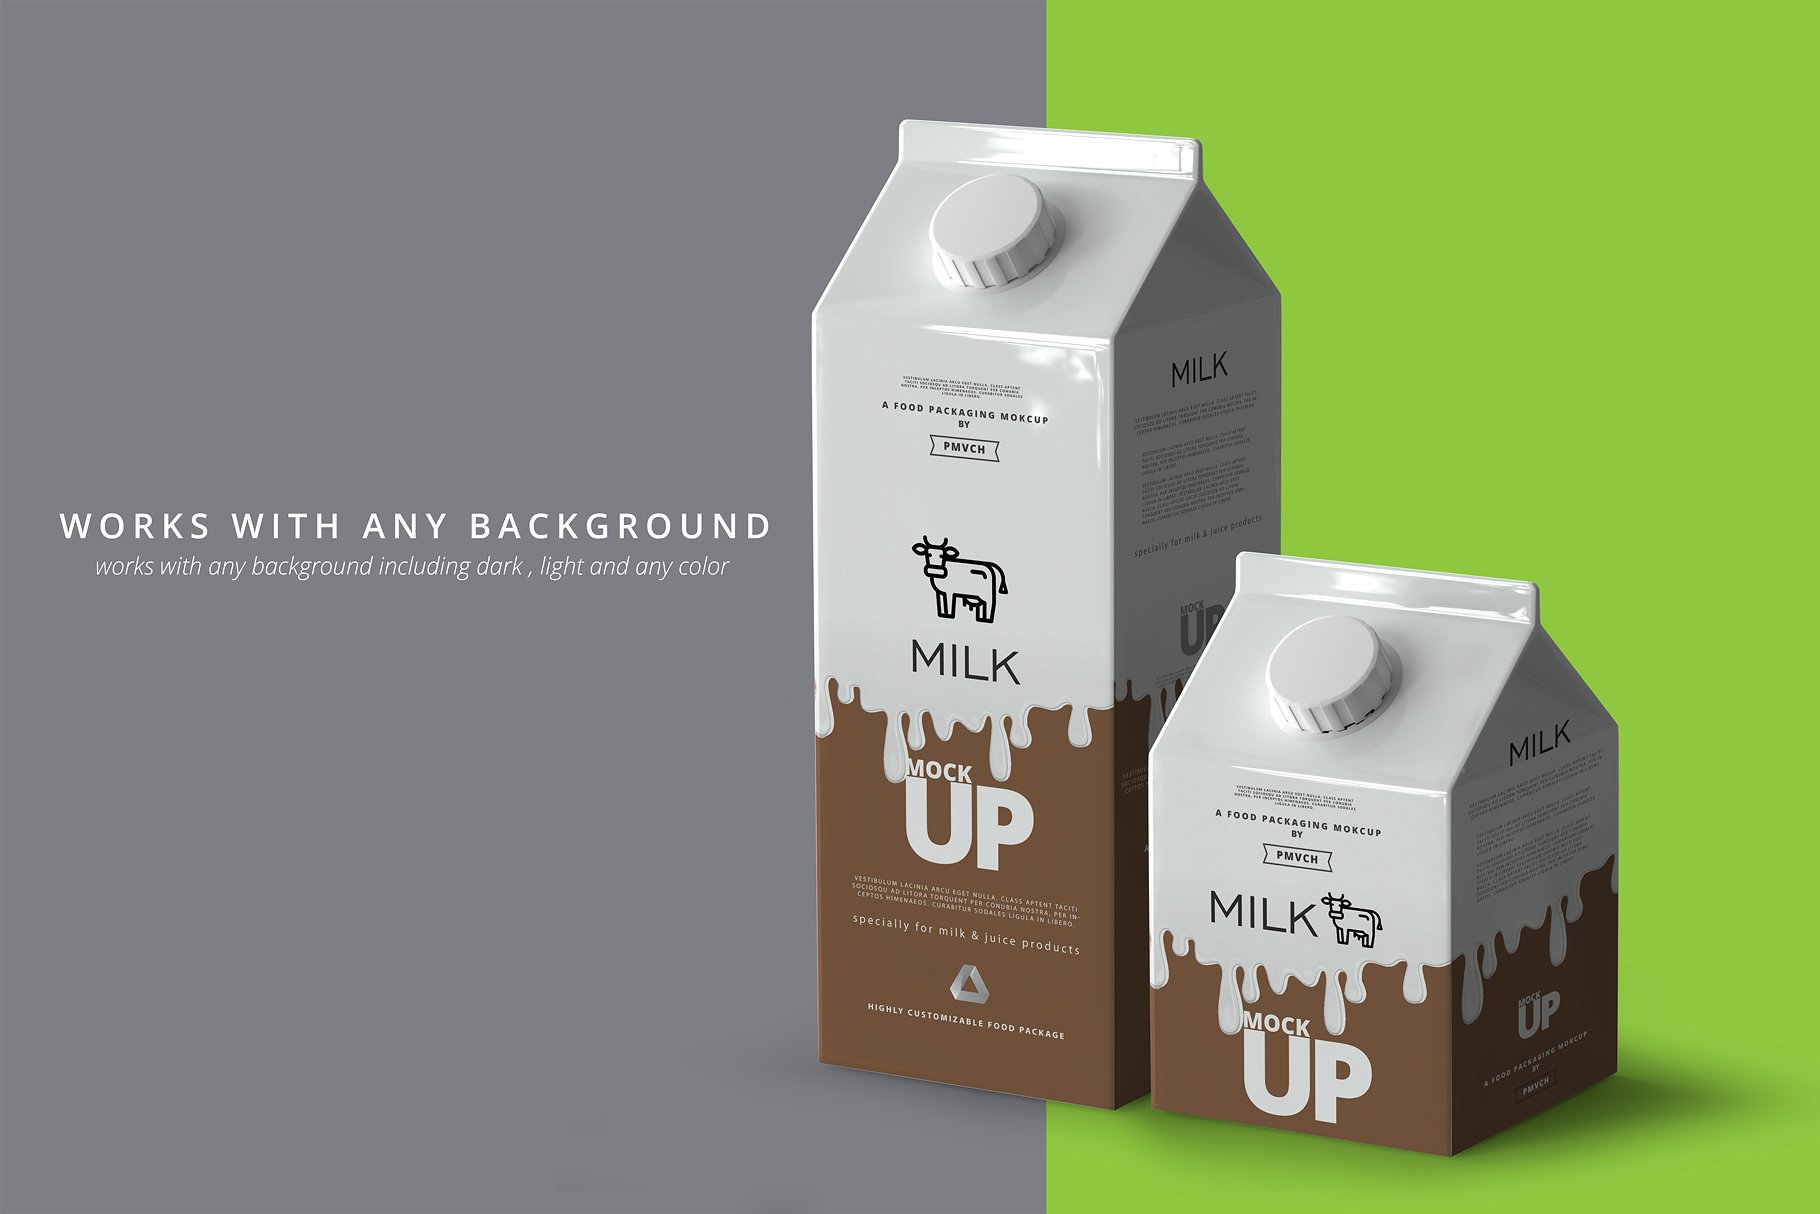 牛奶&果汁纸盒包装展示样机 Milk / Fruit Juice Carton Mockup [psd]插图(8)